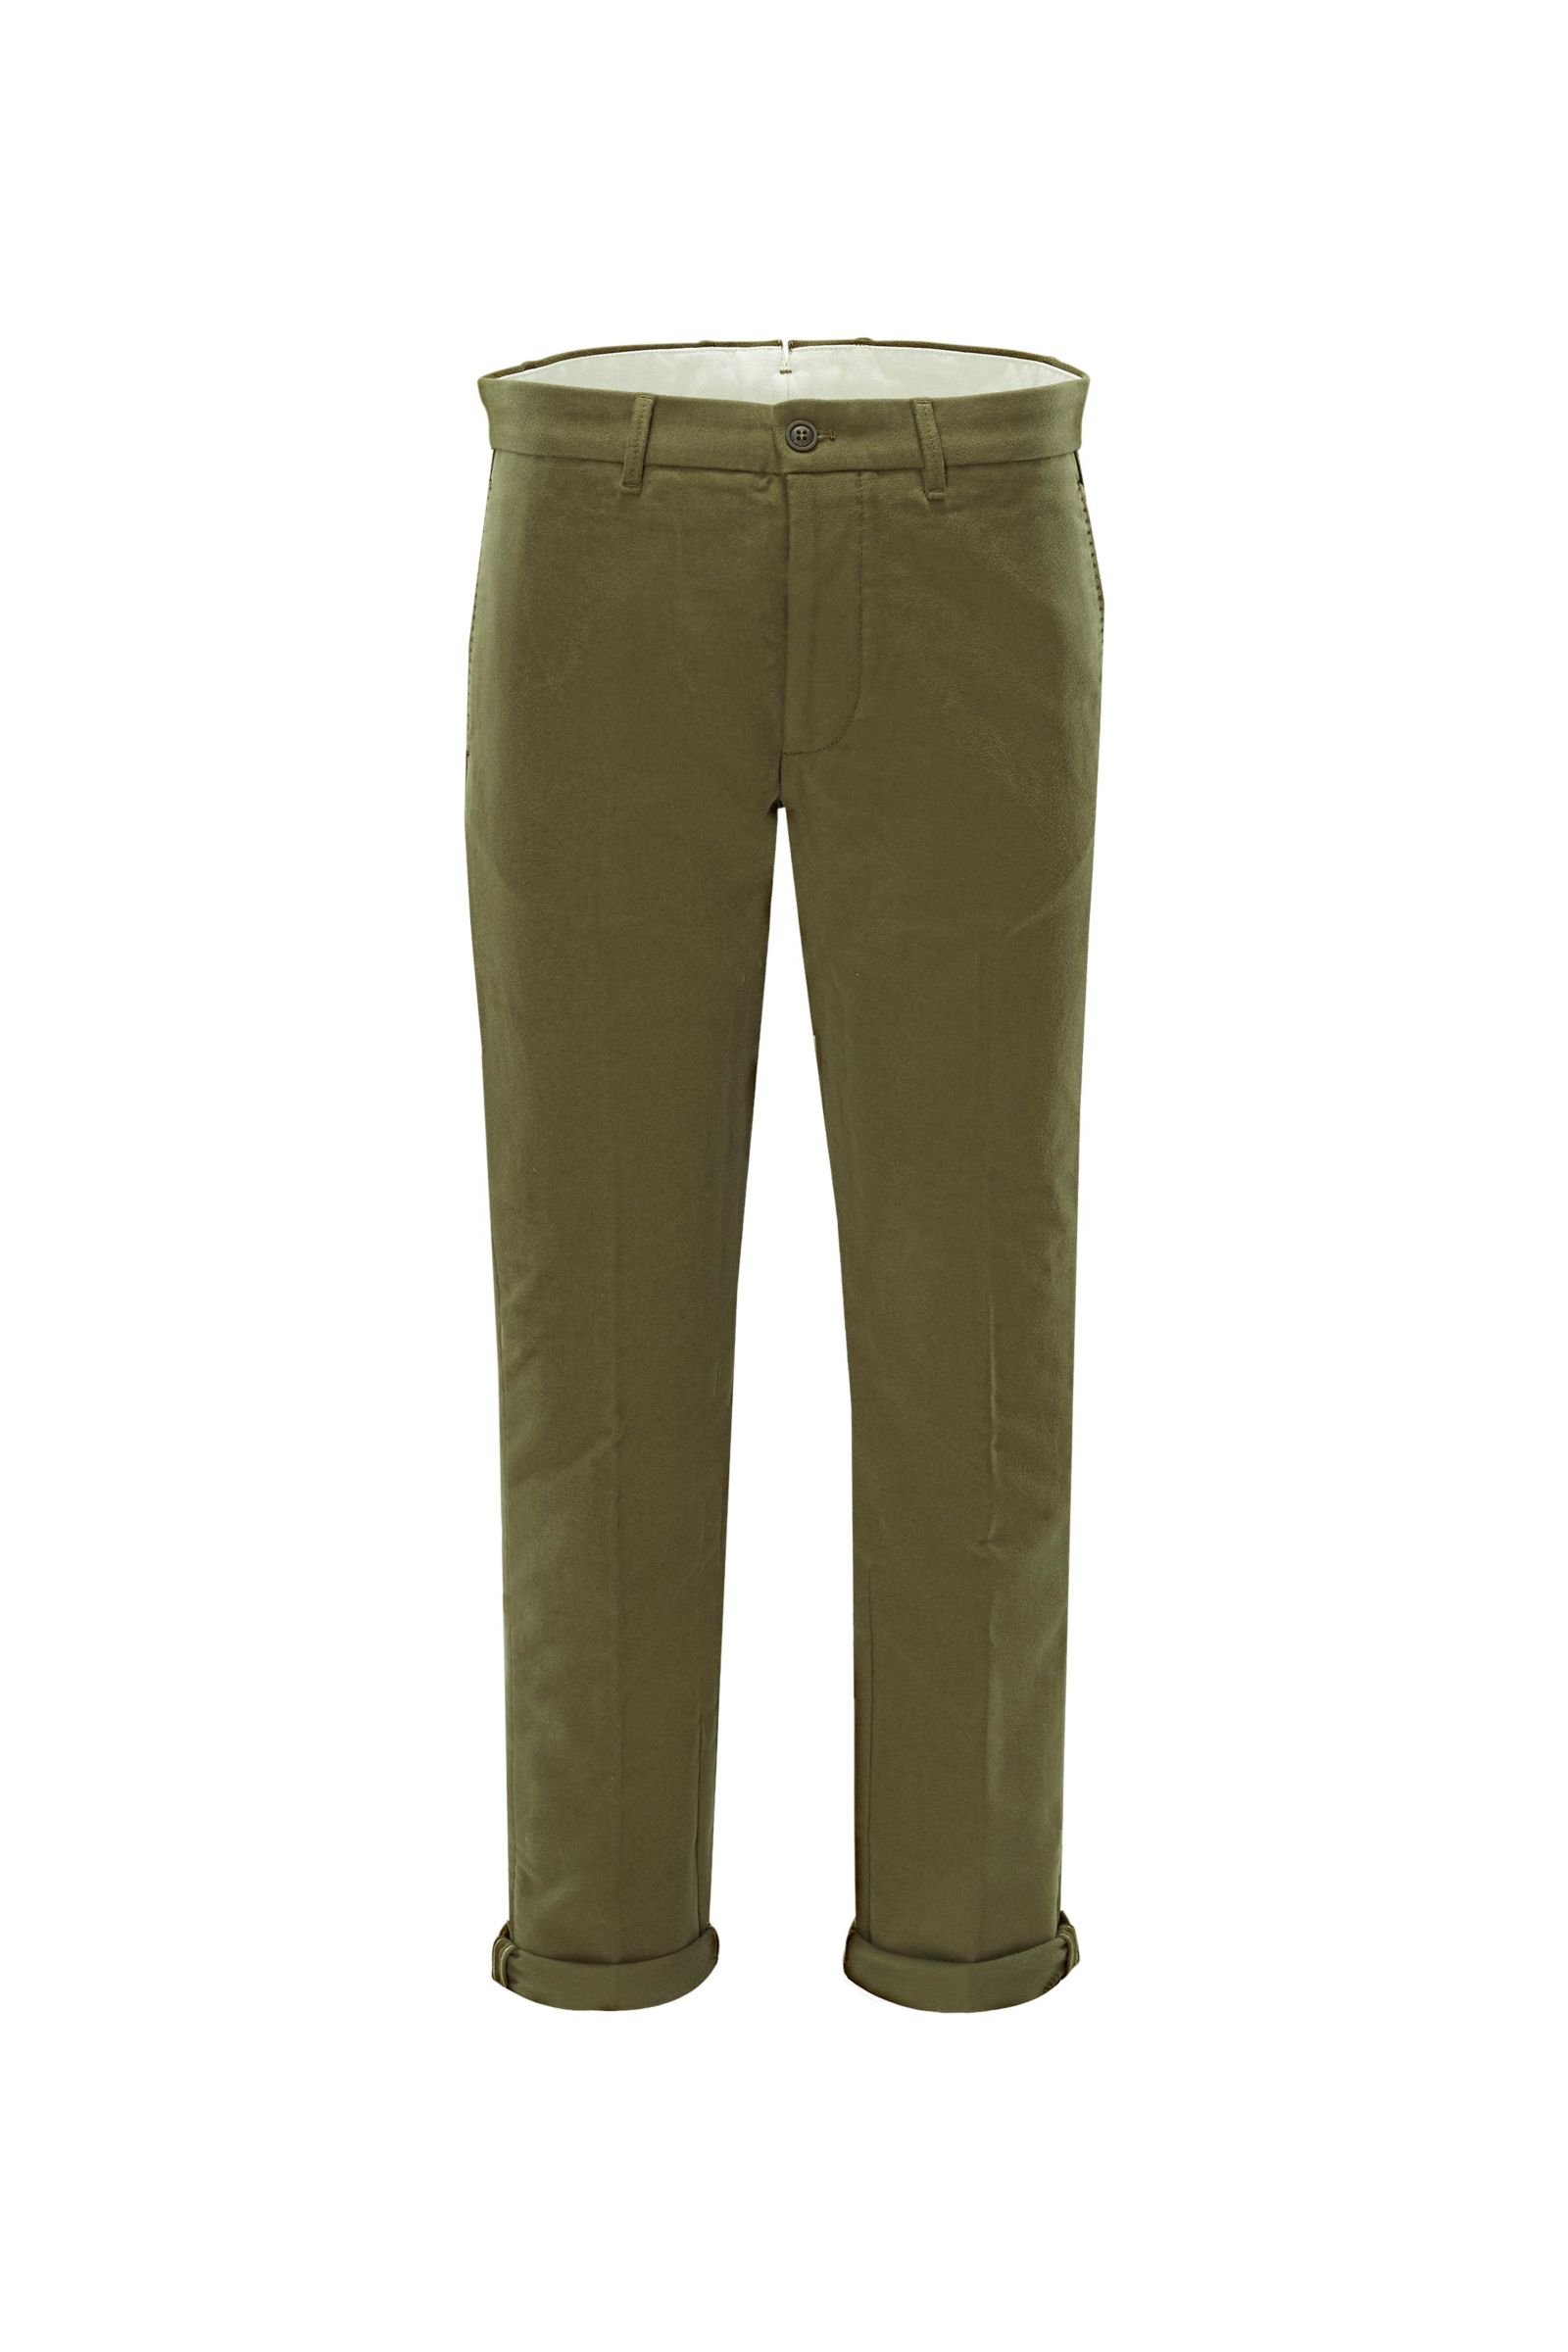 Fustian trousers 'Piatto AMF/32-45' olive